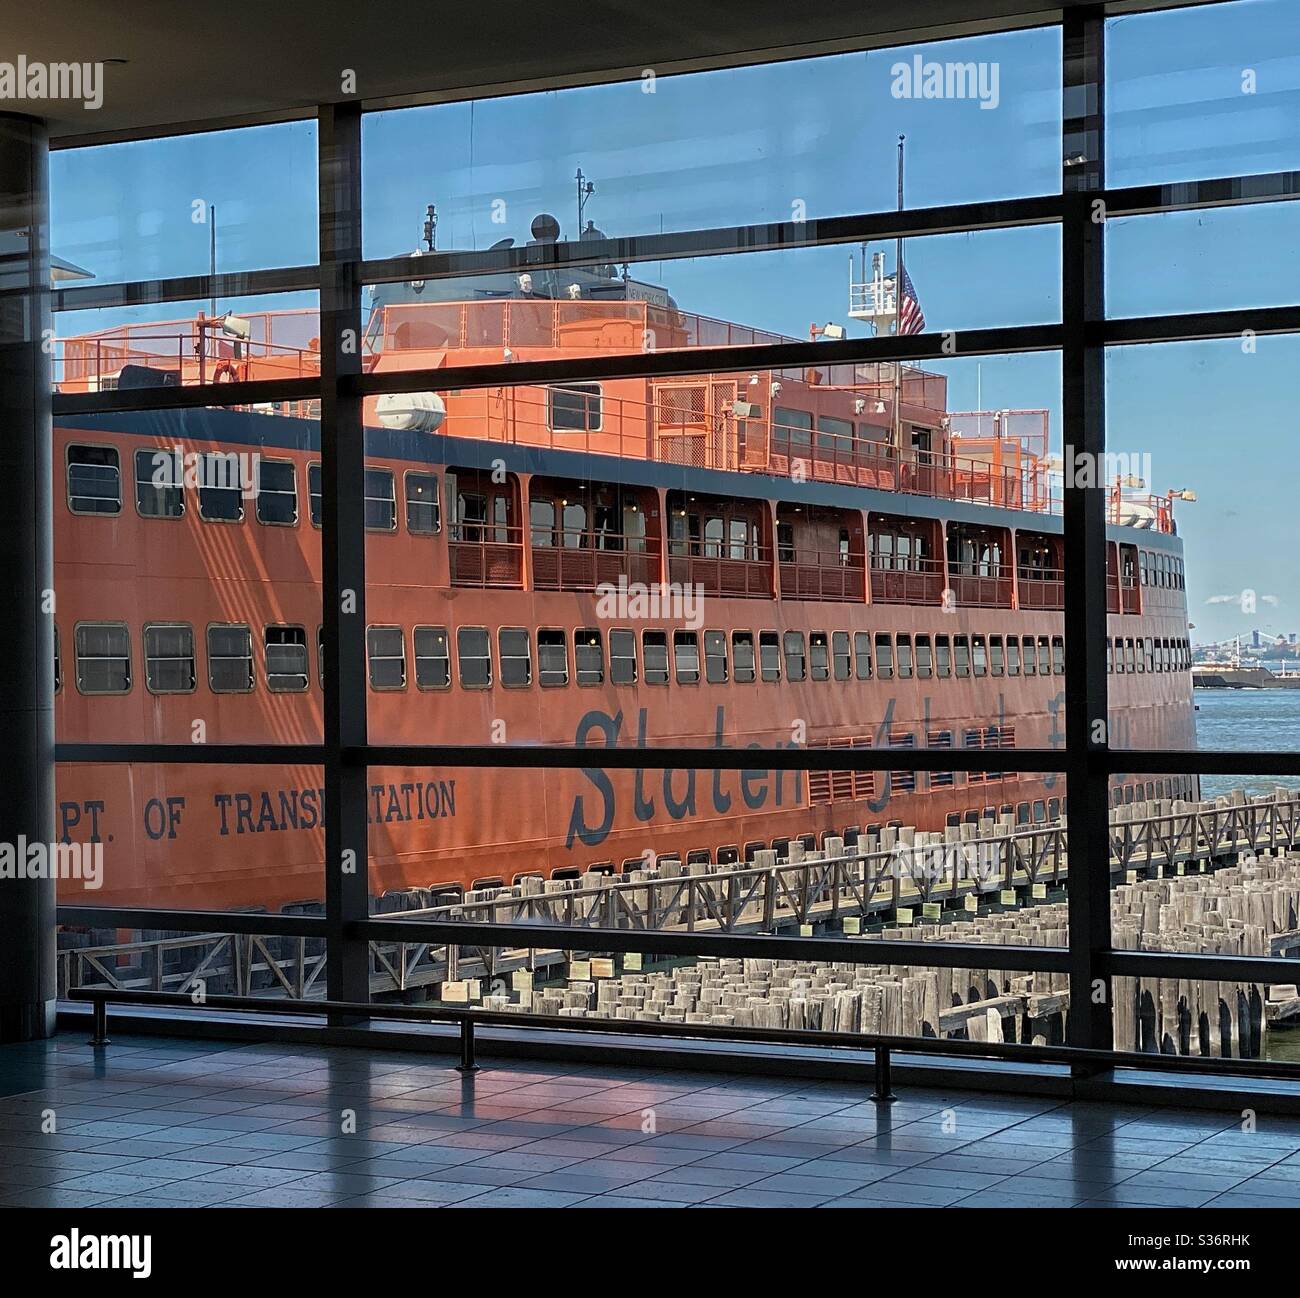 Un ferry Staten Island attend pour quitter le terminal de New York. Banque D'Images